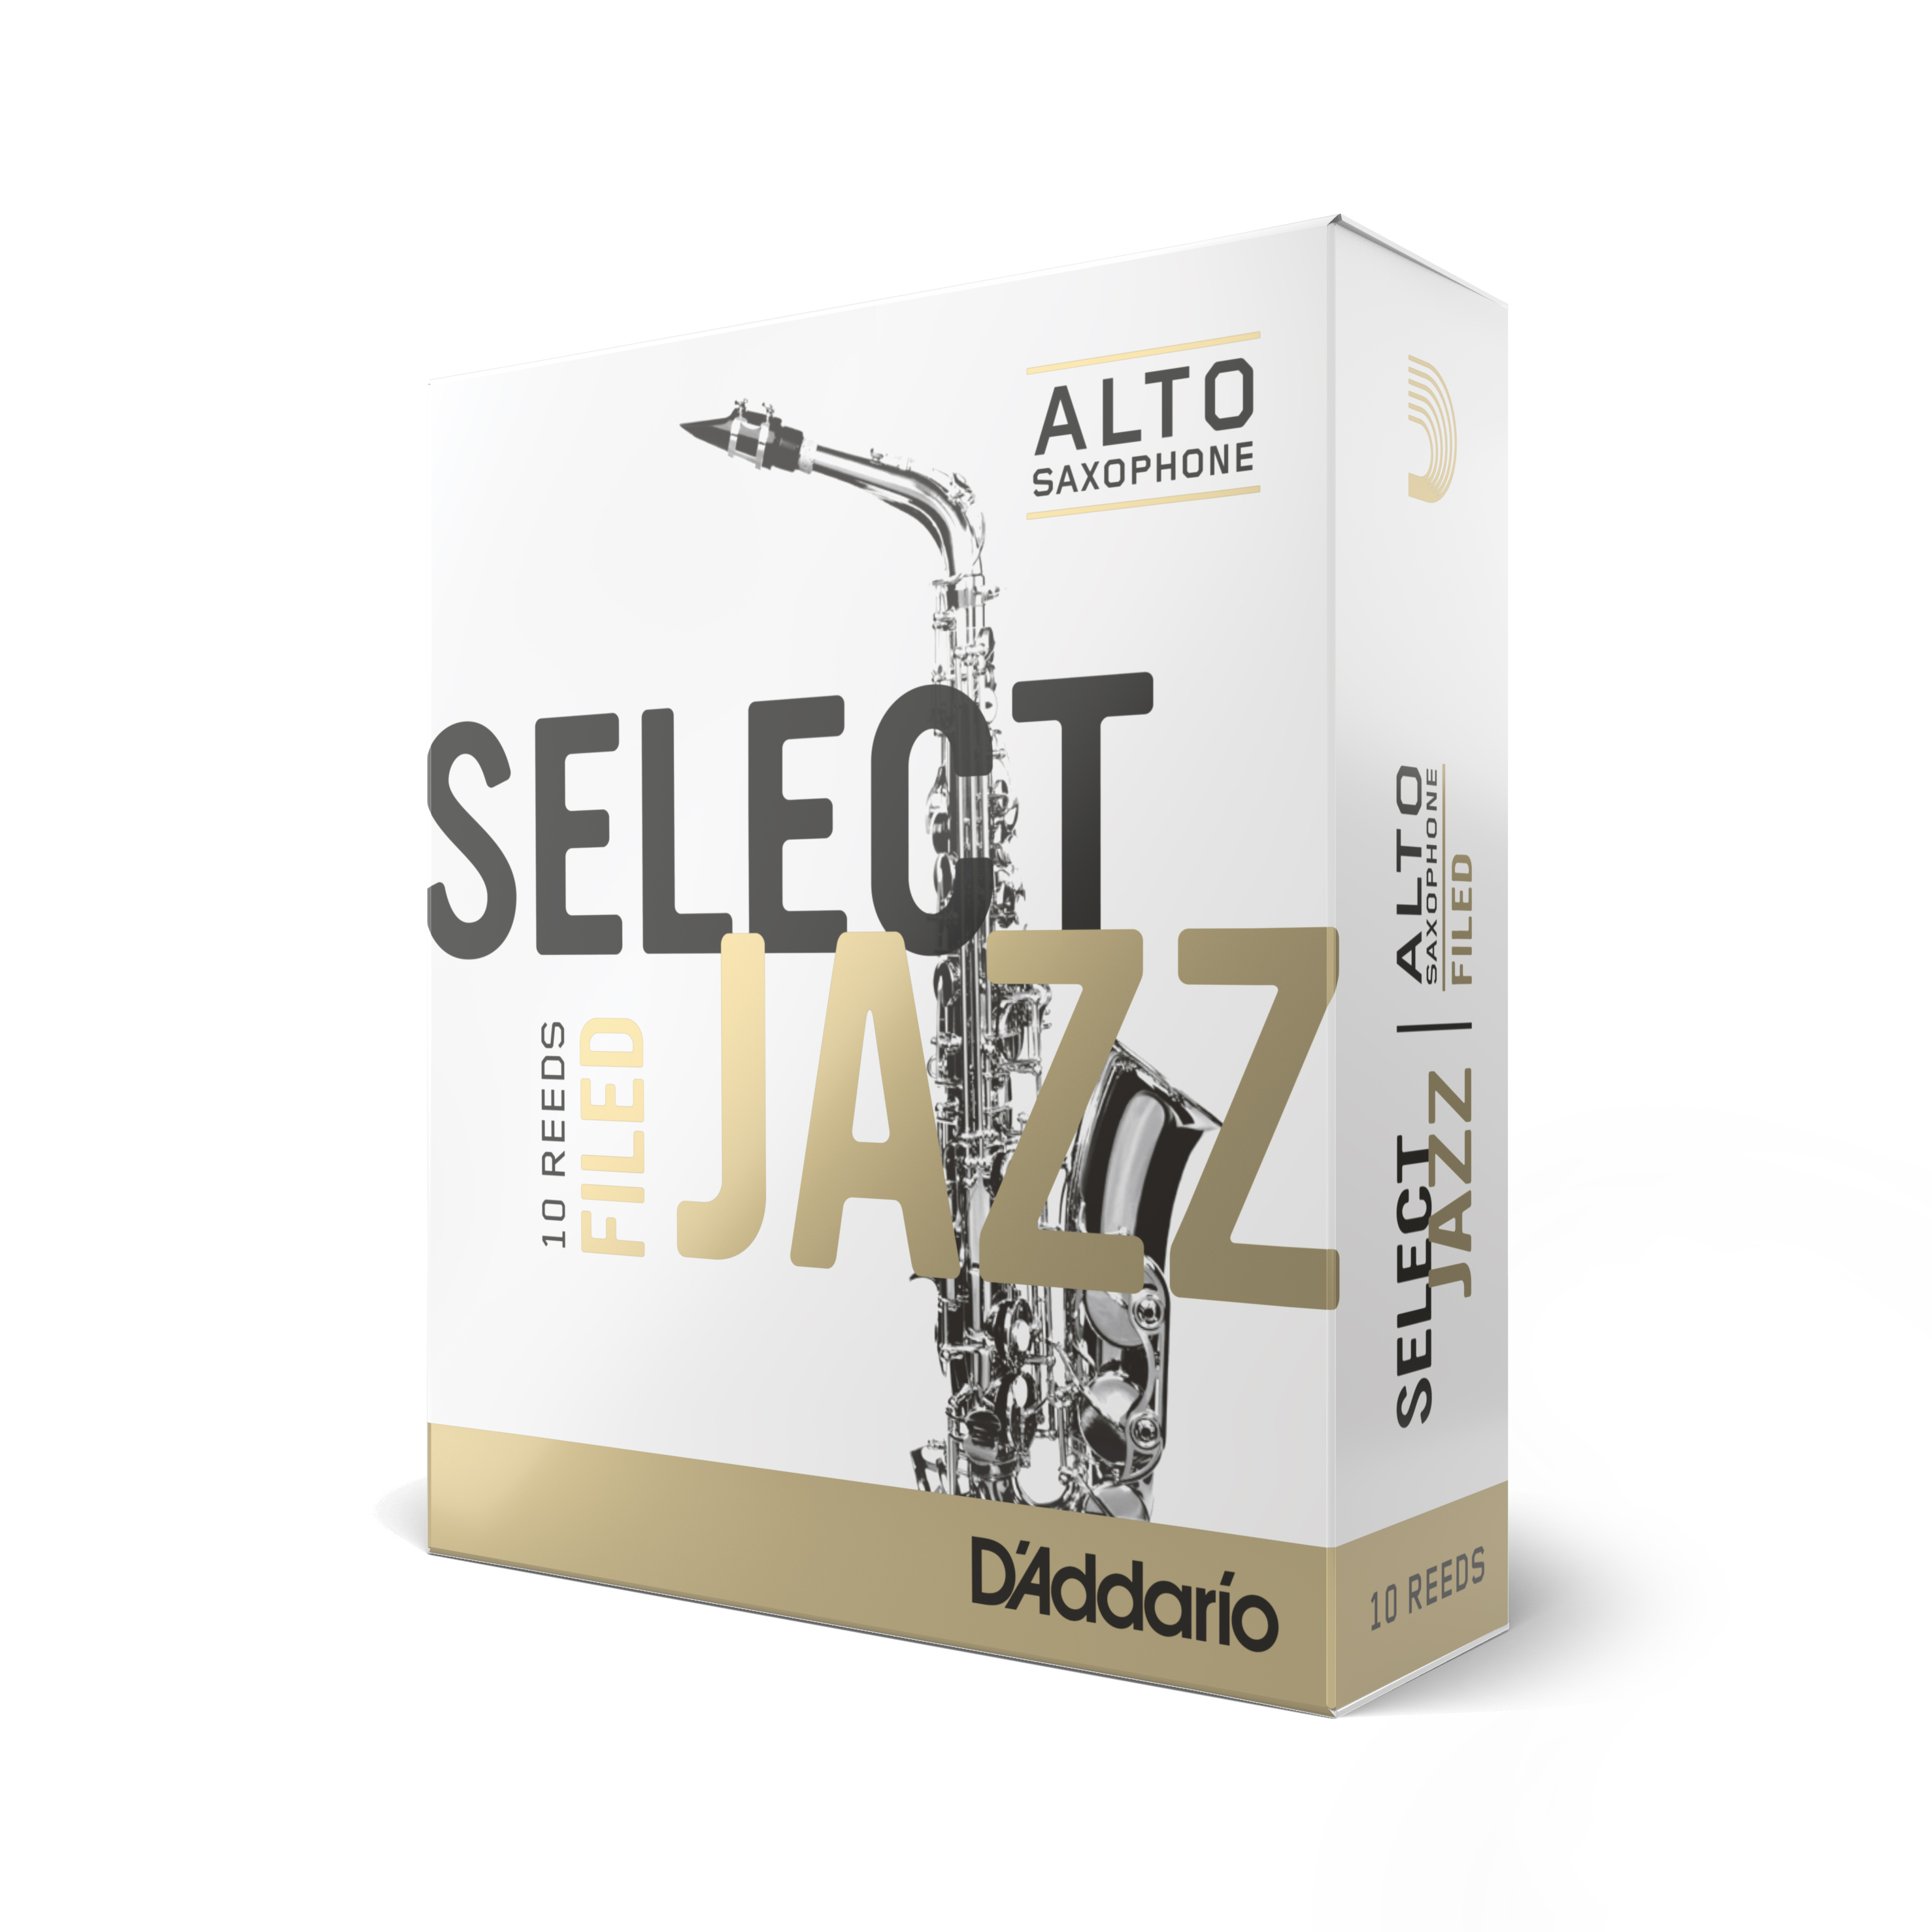 Box of Ten D'addario Select Jazz Filed Alto Sax Reeds